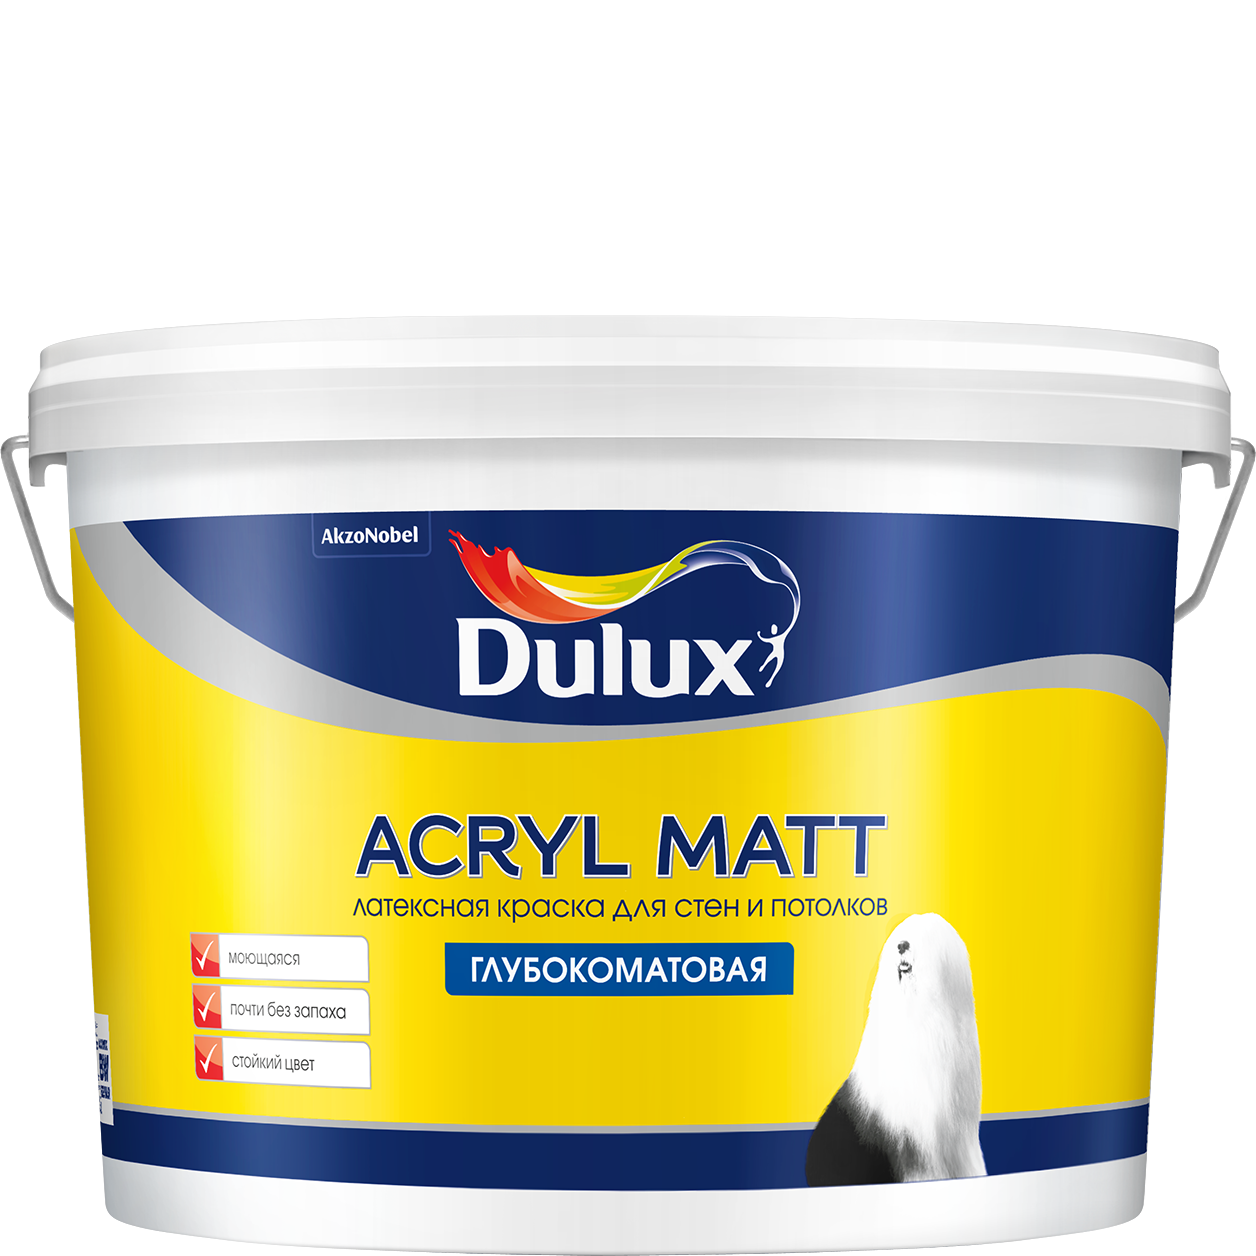  ДЕЛЮКС / Dulux ACRYL MATT для стен и потолка, белая матовая, 2 .